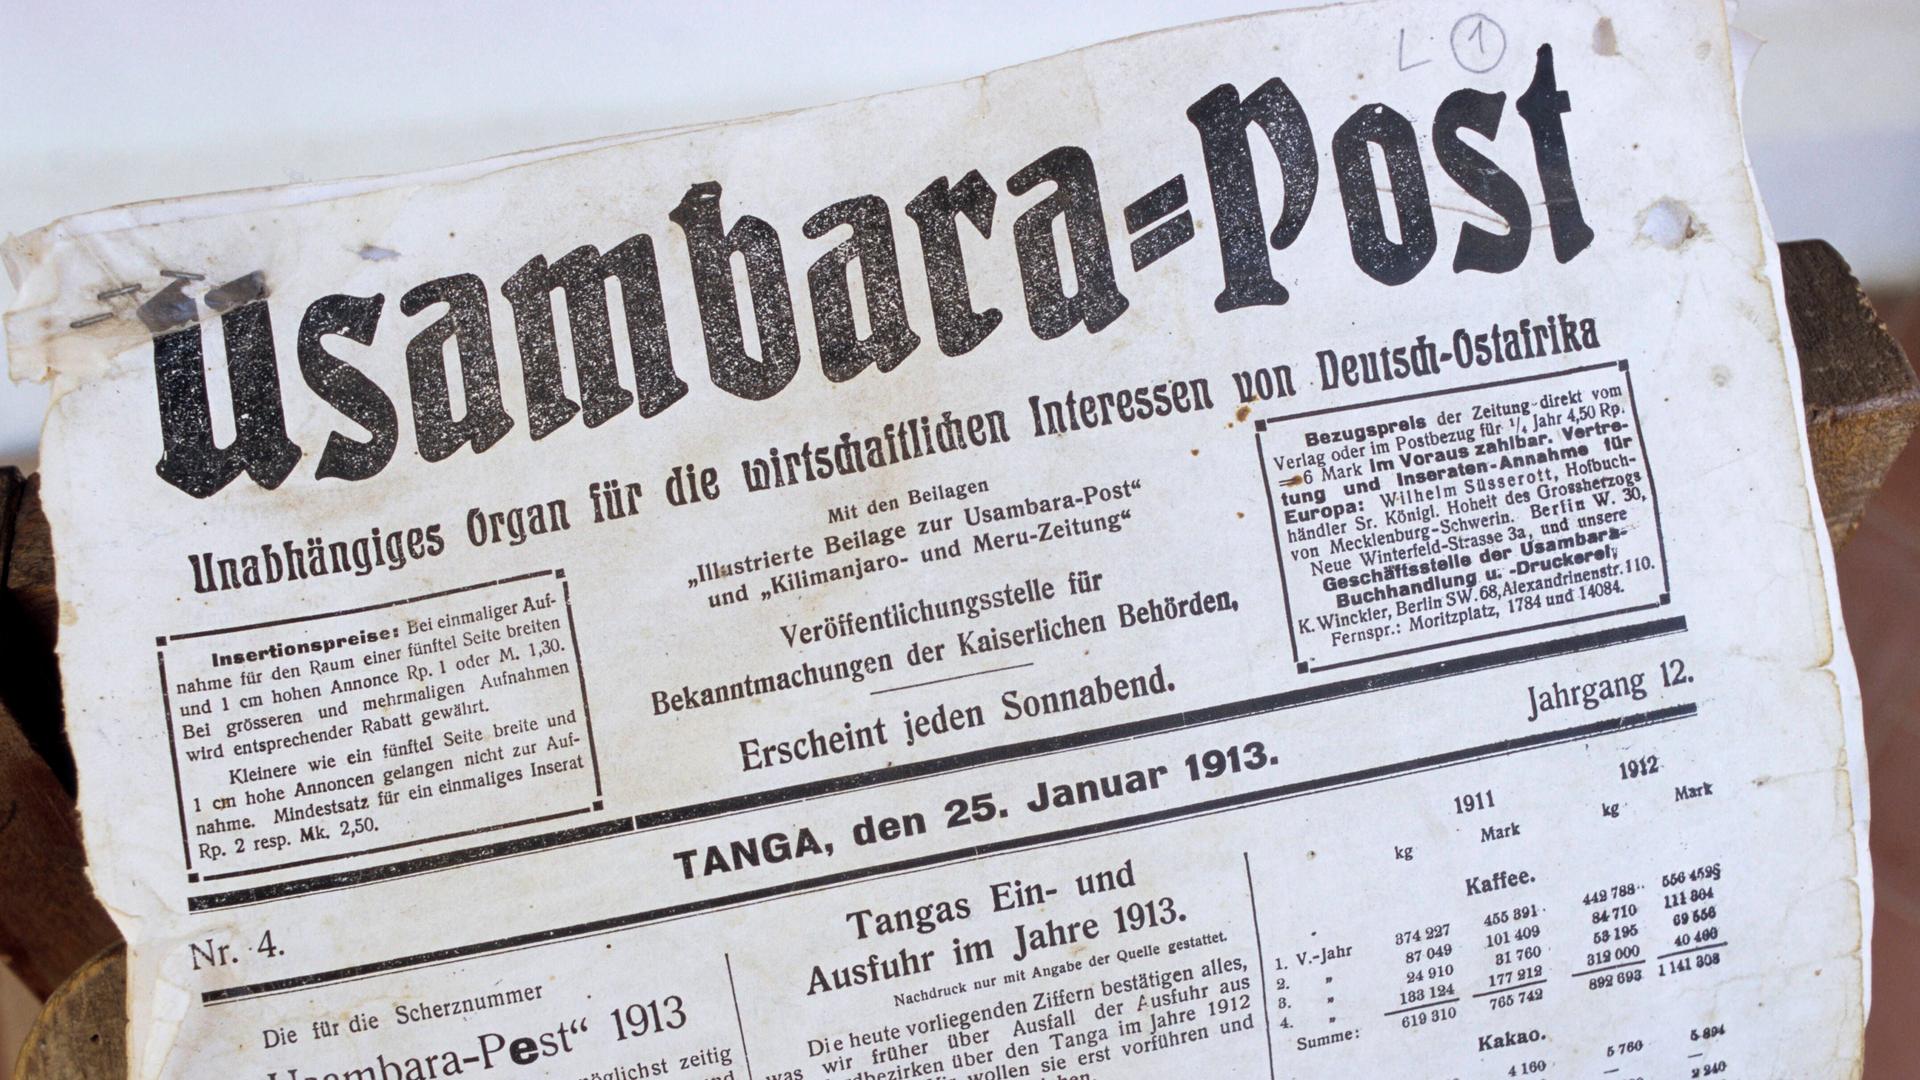 Das Blatt einer Zeitung, die zu Zeiten der Kolonialgeschichte von Deutschland herausgegeben wurde. Sie nennt sich Usambara-Post und es ist eine Ausgabe vom 25.01.1913.